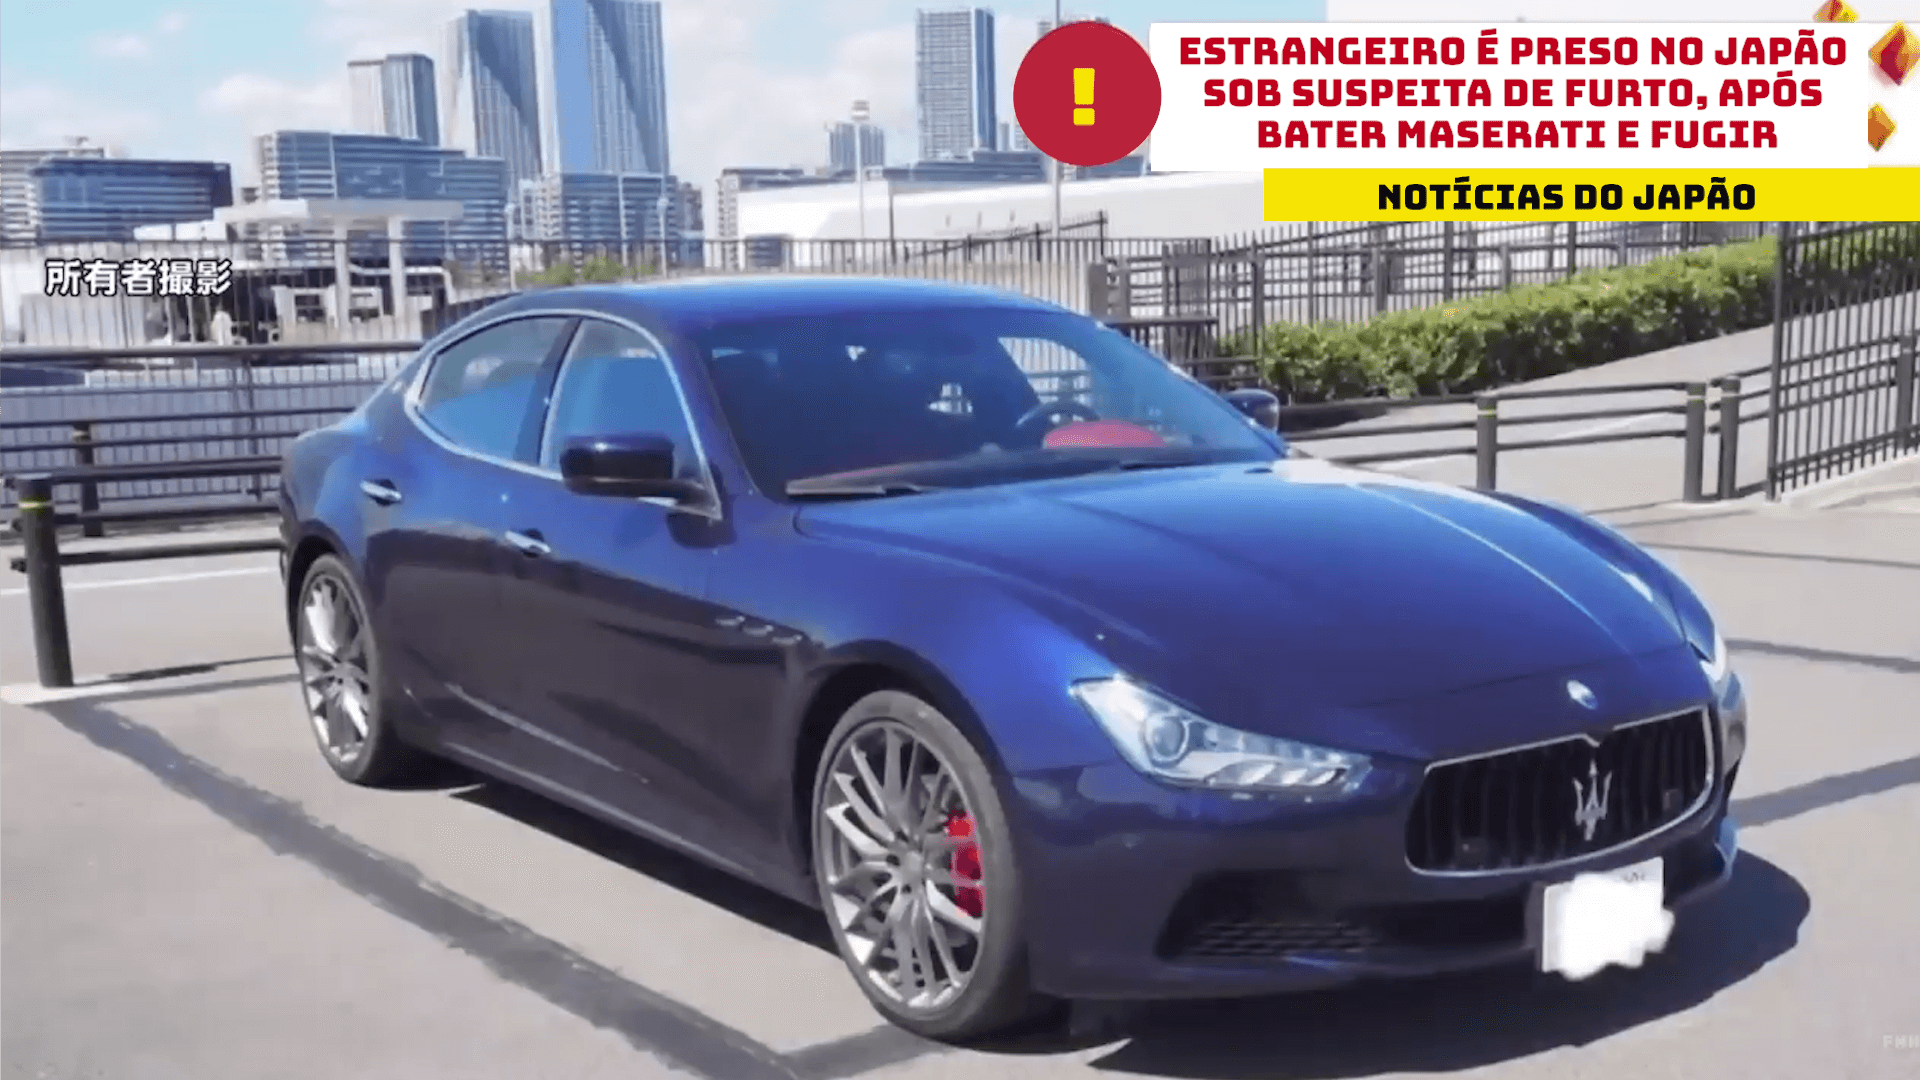 Estrangeiro é preso no Japão sob suspeita de furto, após bater Maserati e fugir